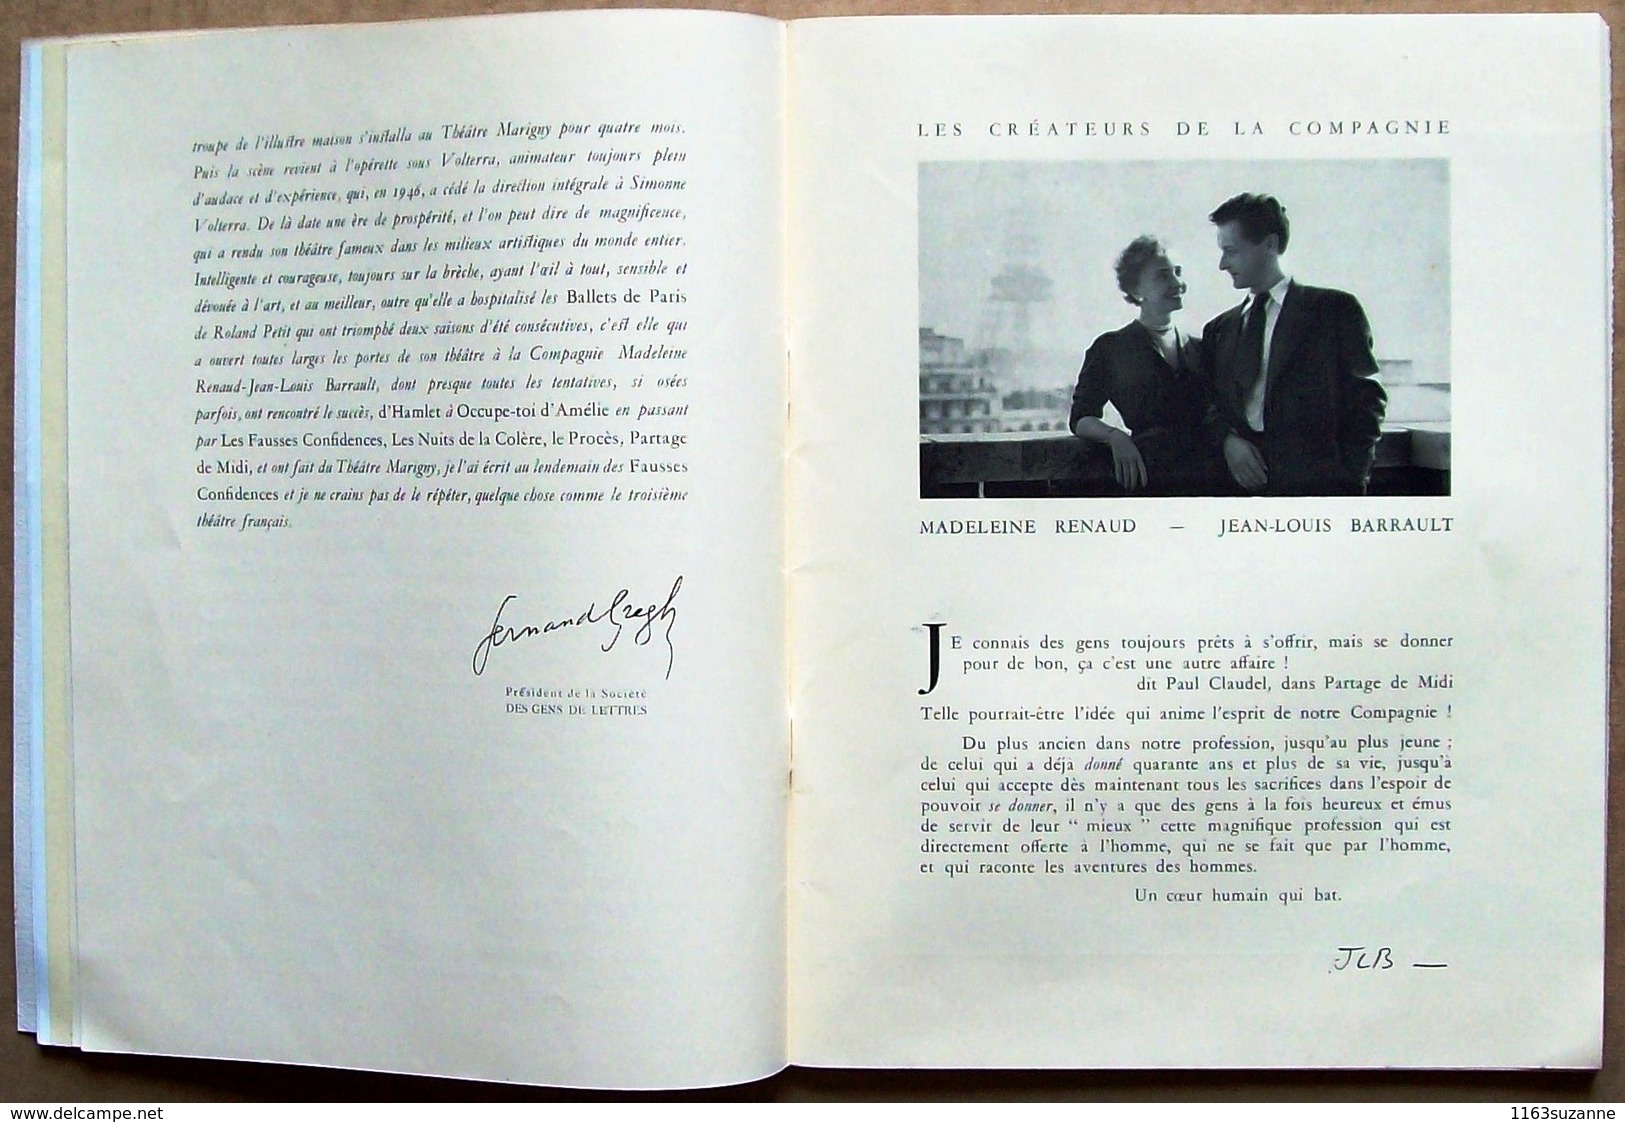 Programme Du THEATRE MARIGNY (janvier 1950), Compagnie Madeleine Renaud - Jean-Louis Barrault - Programmes